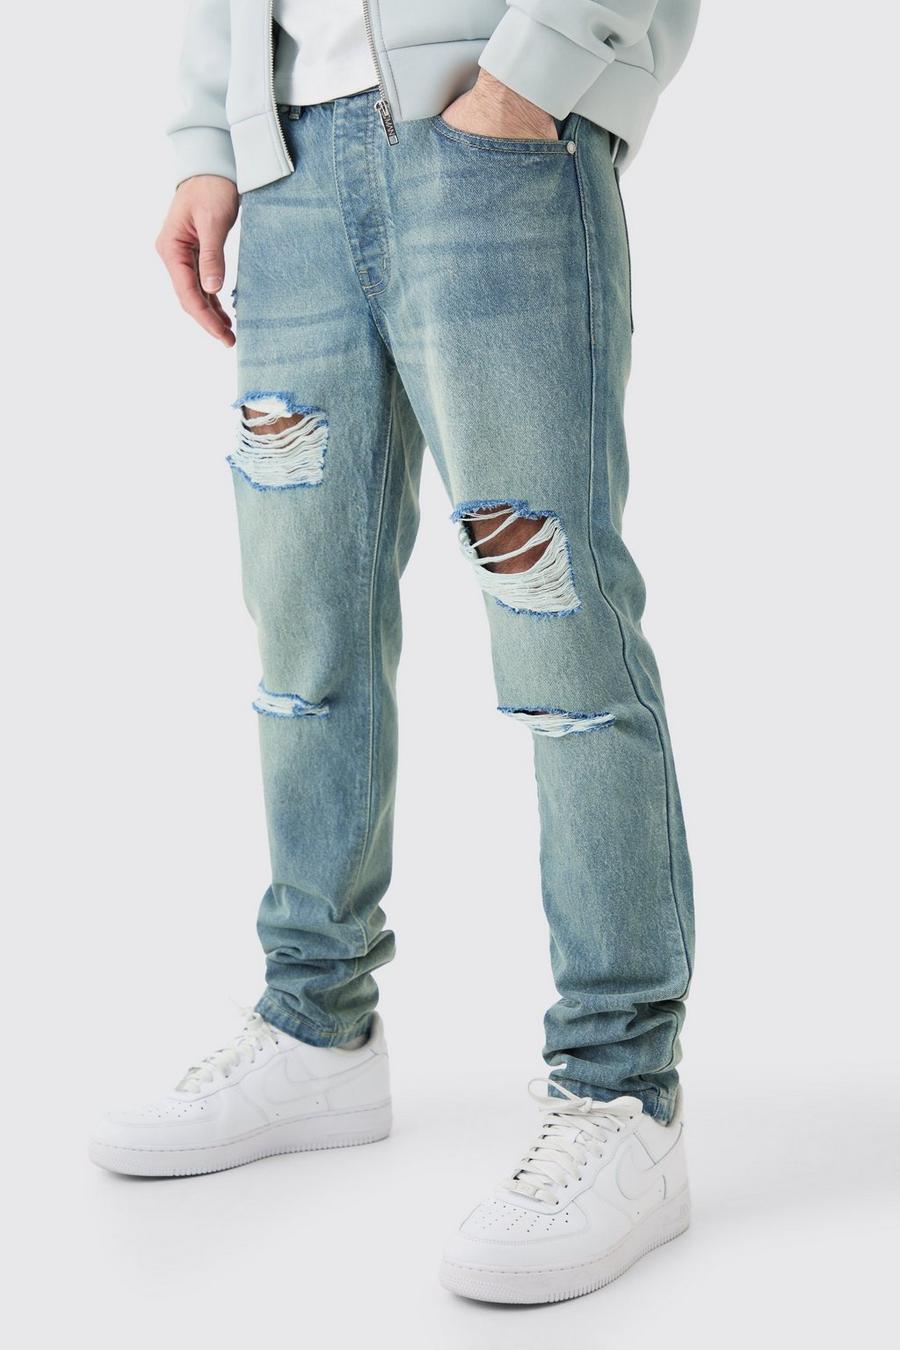 Jeans Slim Fit in denim rigido blu antico con strappi all over, Antique blue